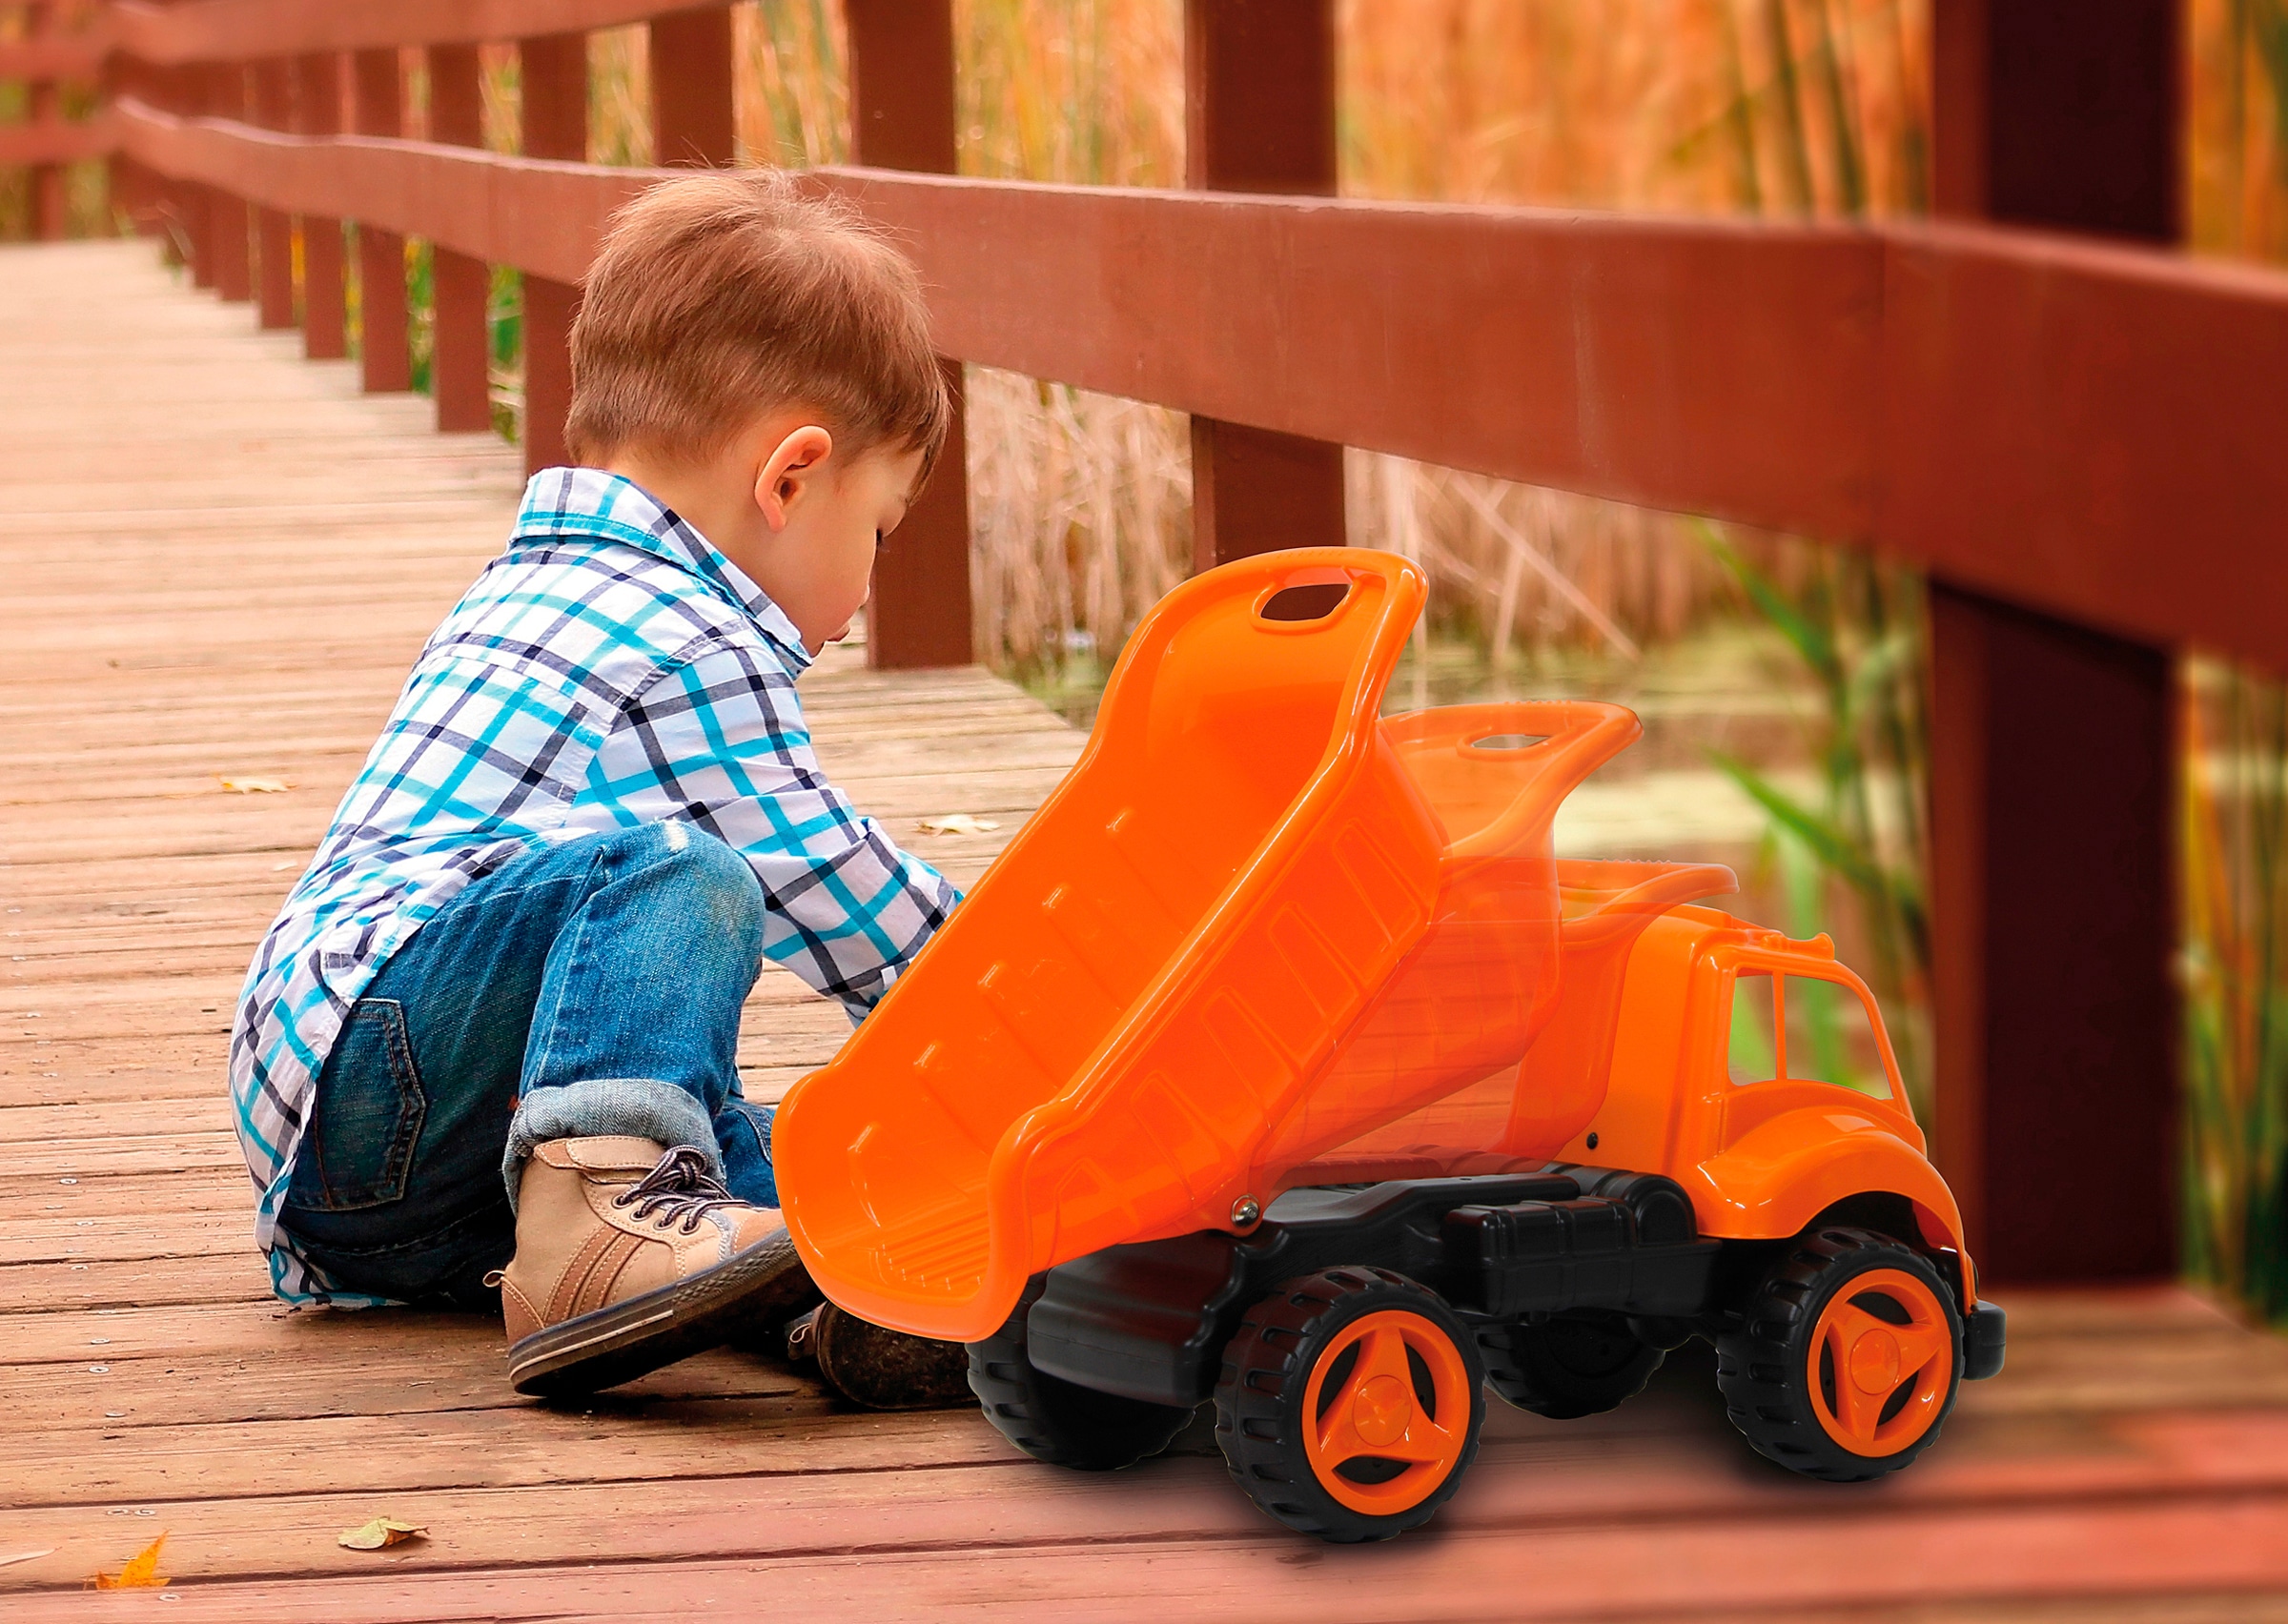 Jamara Spielzeug-Radlader »Dump Truck XL«, für Kinder ab 12 Monaten, BxLxH: 36x71x38 cm